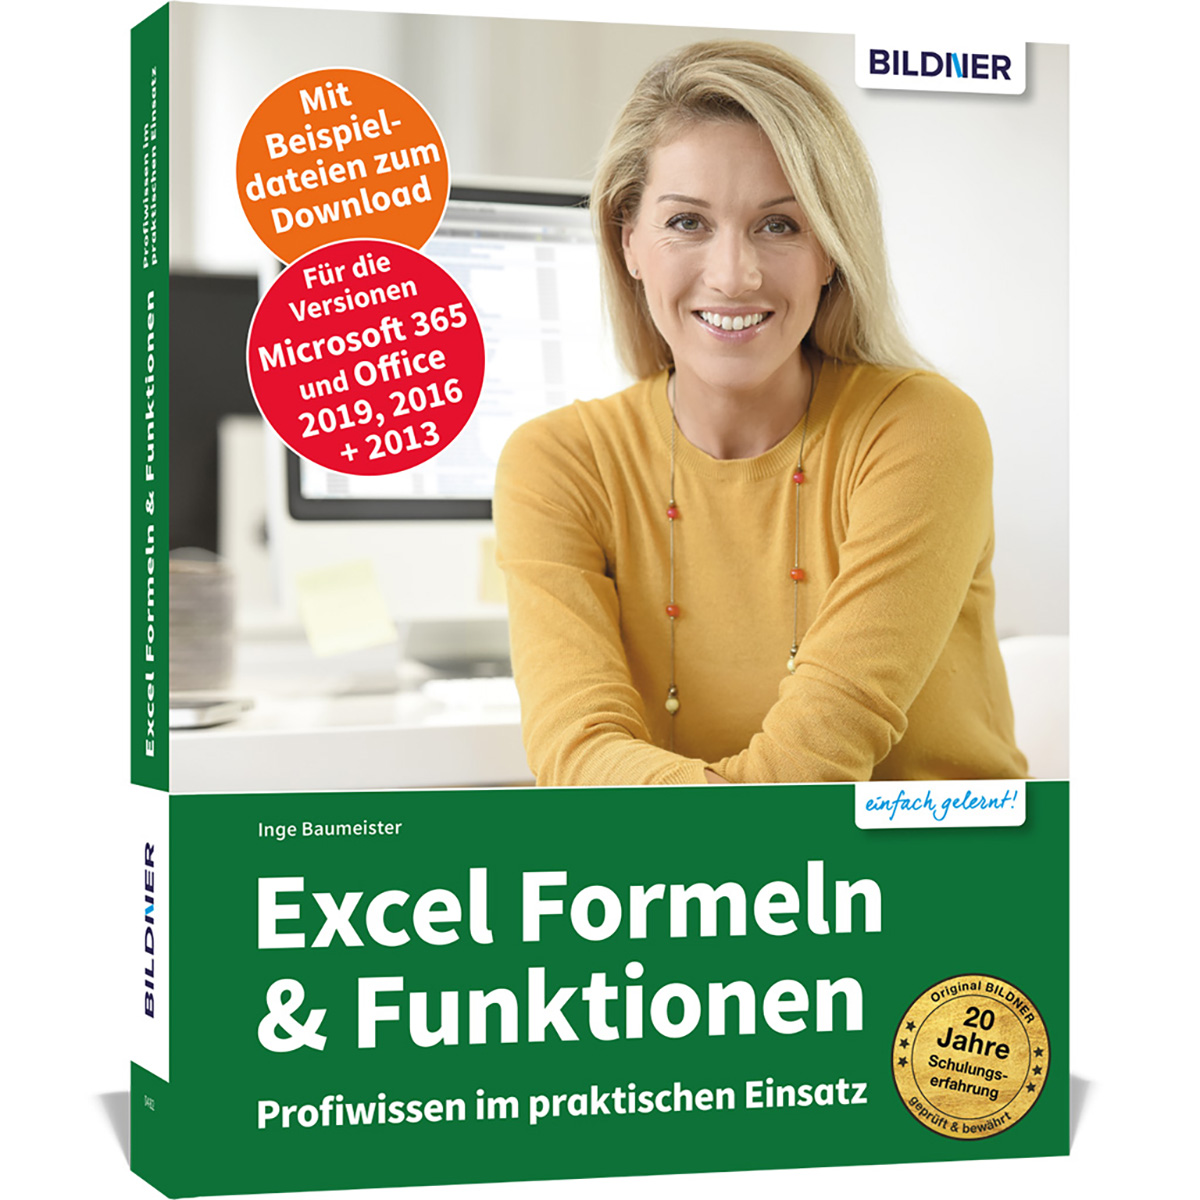 Formeln im Einsatz & praktischen Profiwissen Funktionen: Excel